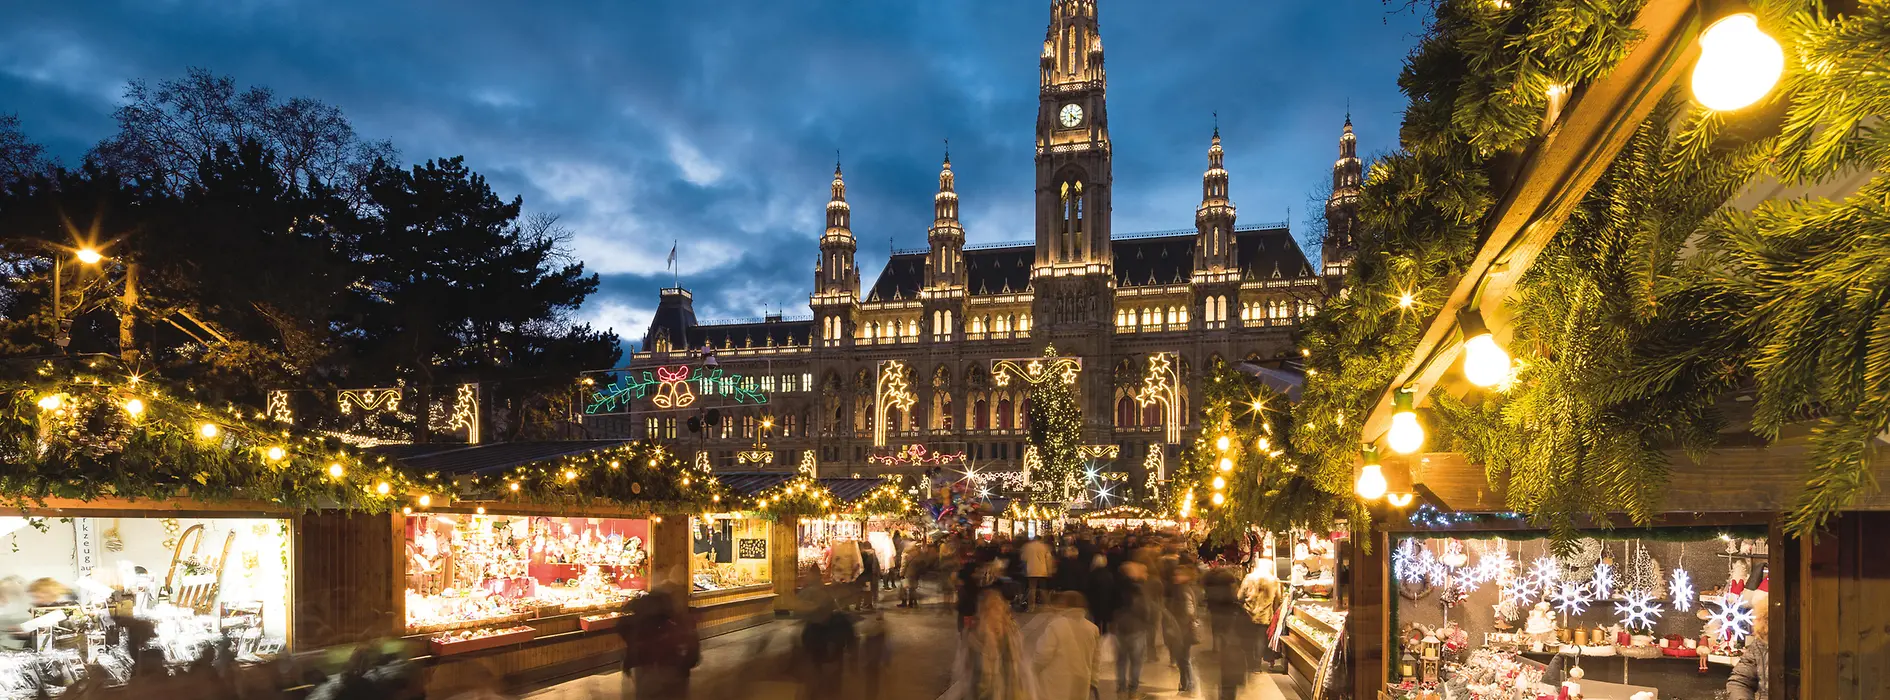 Vídeňský Ježíškův vánoční trh na radničním náměstí, večer, osvětlení